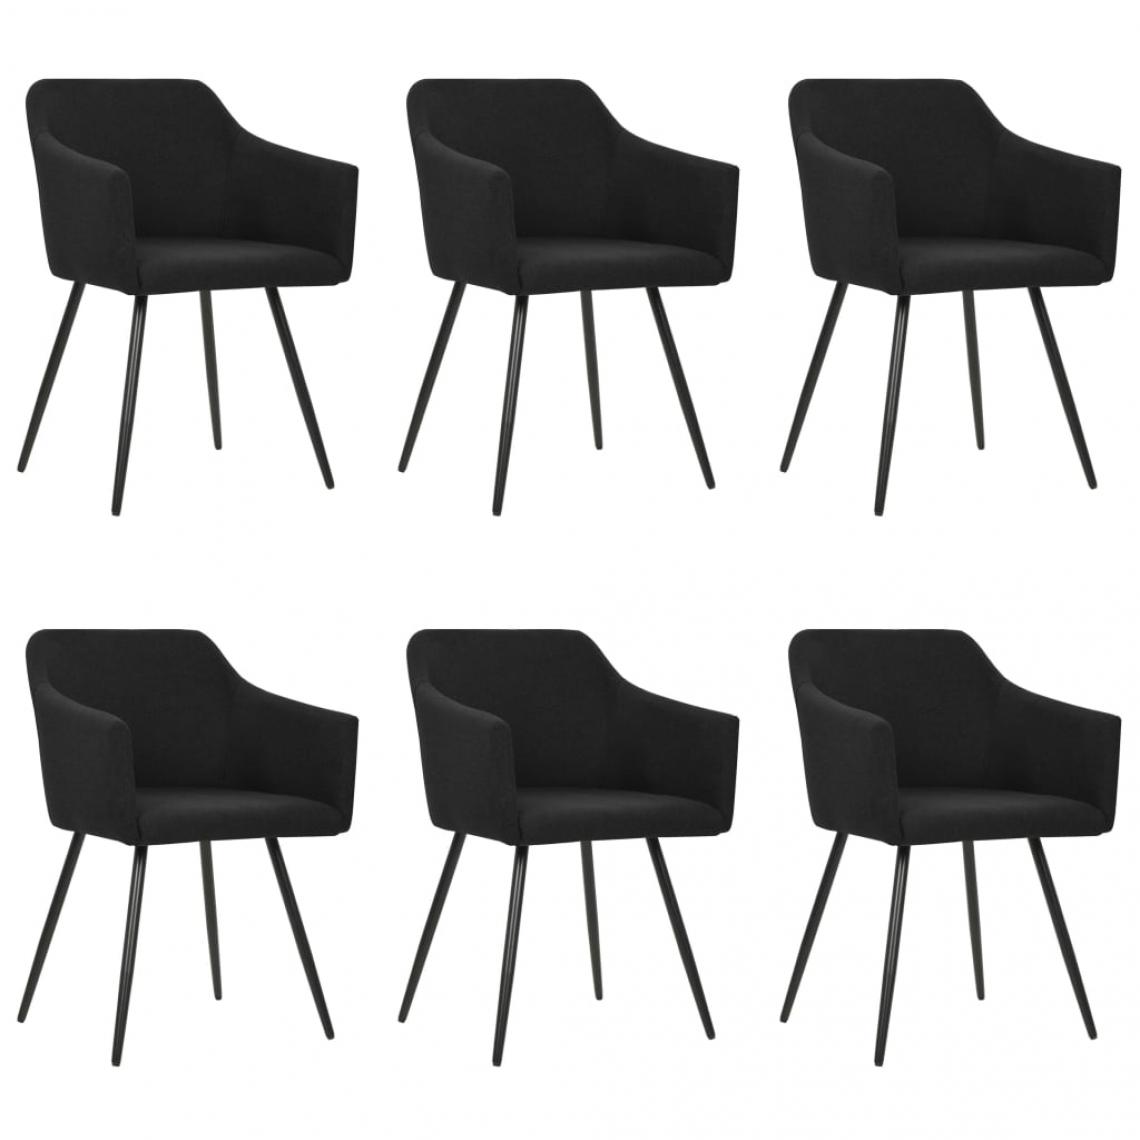 Decoshop26 - Lot de 6 chaises de salle à manger cuisine design moderne tissu noir CDS022728 - Chaises